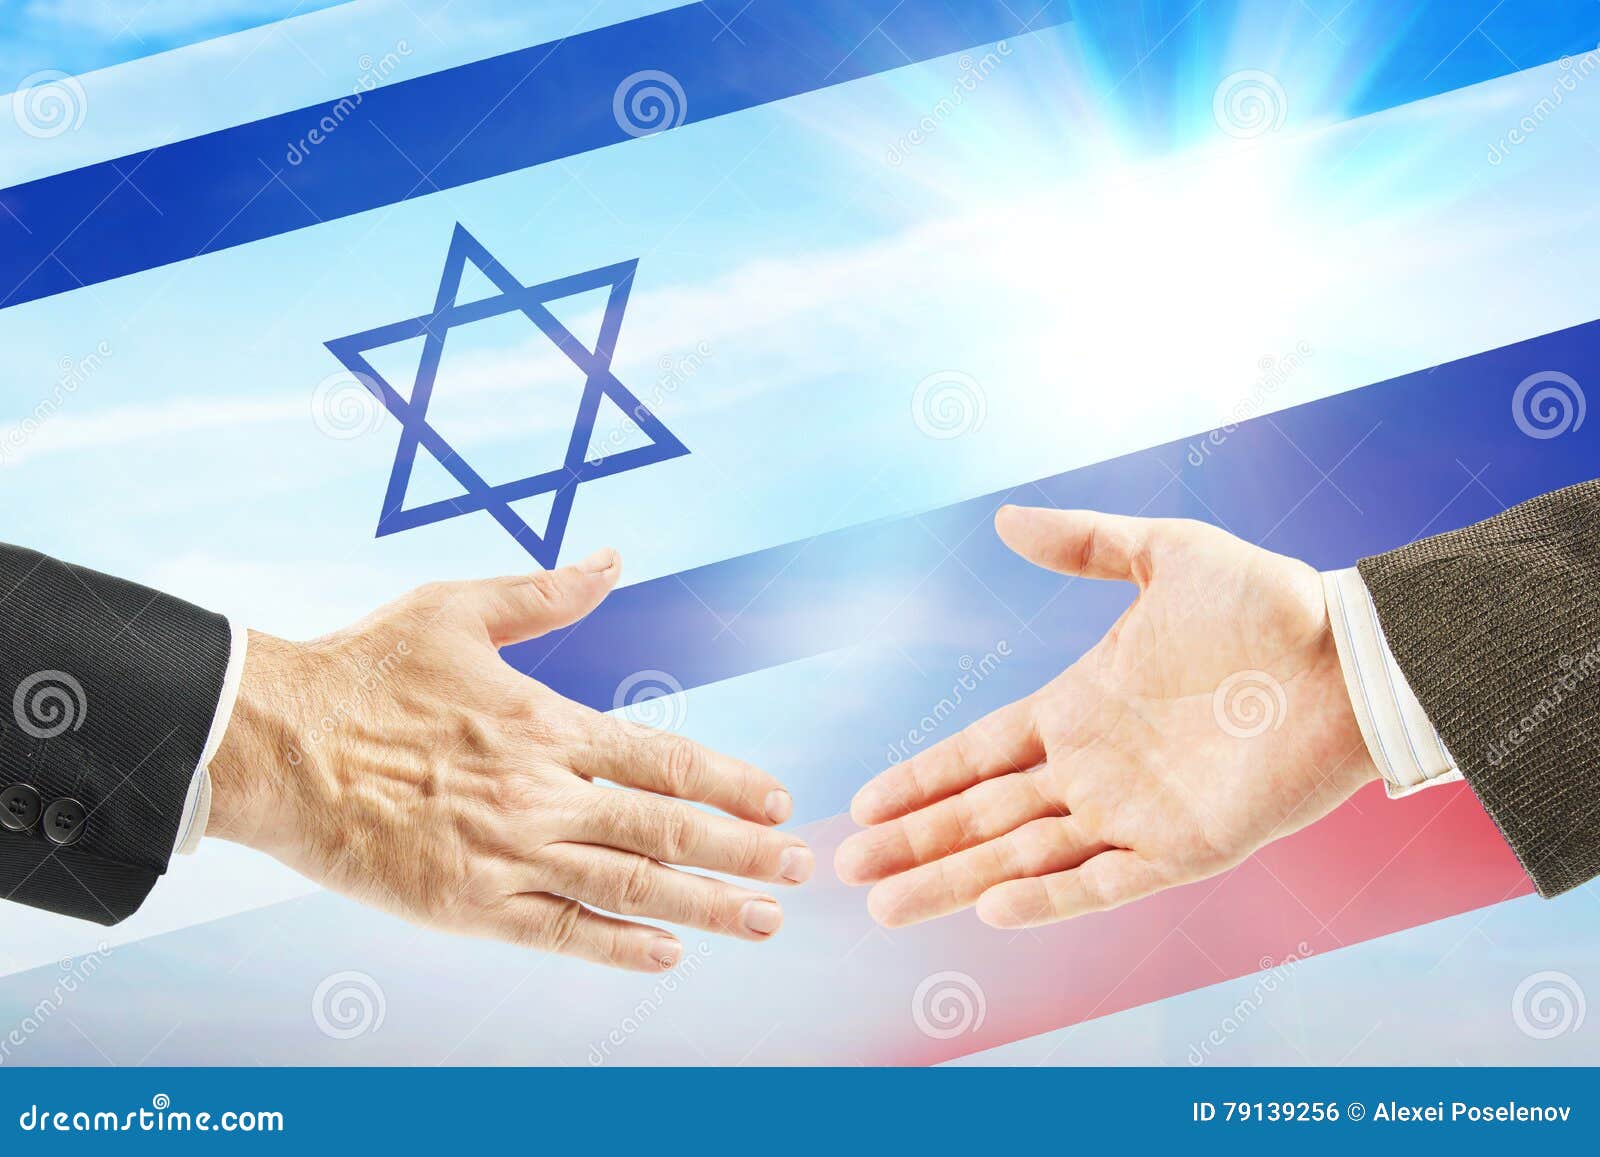 Дружественные отношения между странами. Российско-израильские отношения. Международные экономические отношения Израиля.